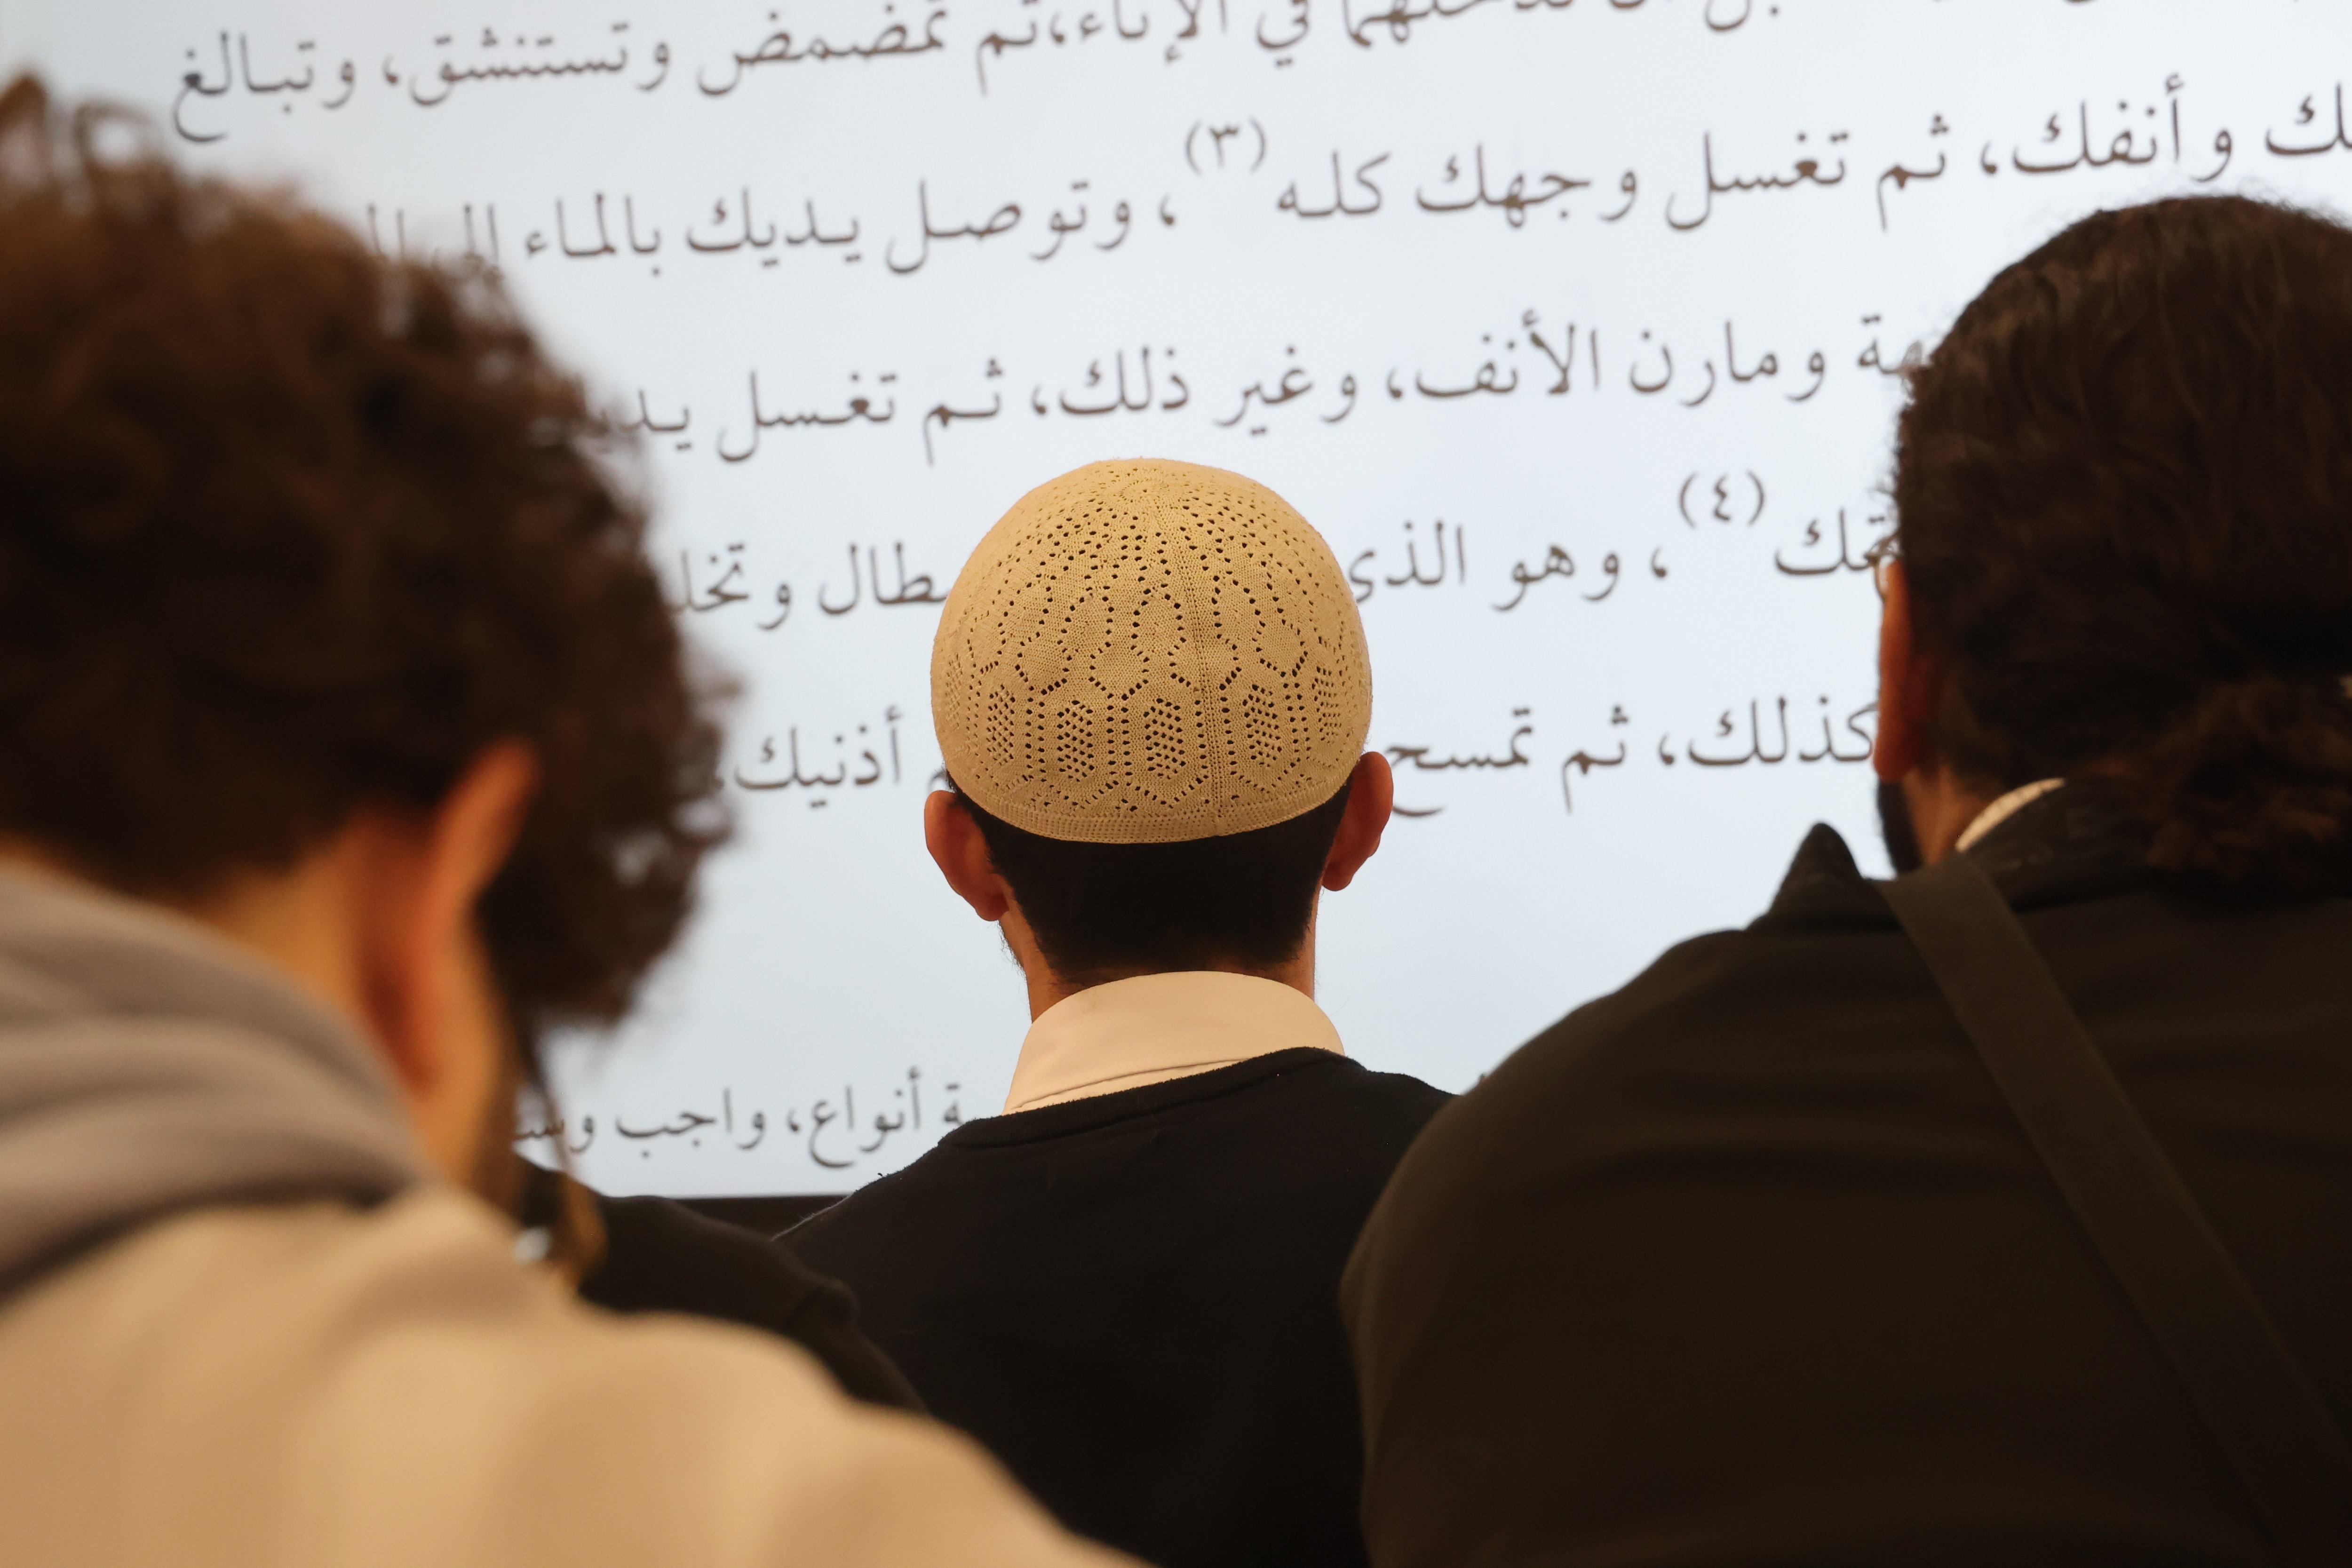 L'imam de la mosquée marseillaise annonçait une conférence avec trois autres prédicateurs aux positions jugées contraires aux valeurs de la République (illustration). LP/Philippe Lavieille